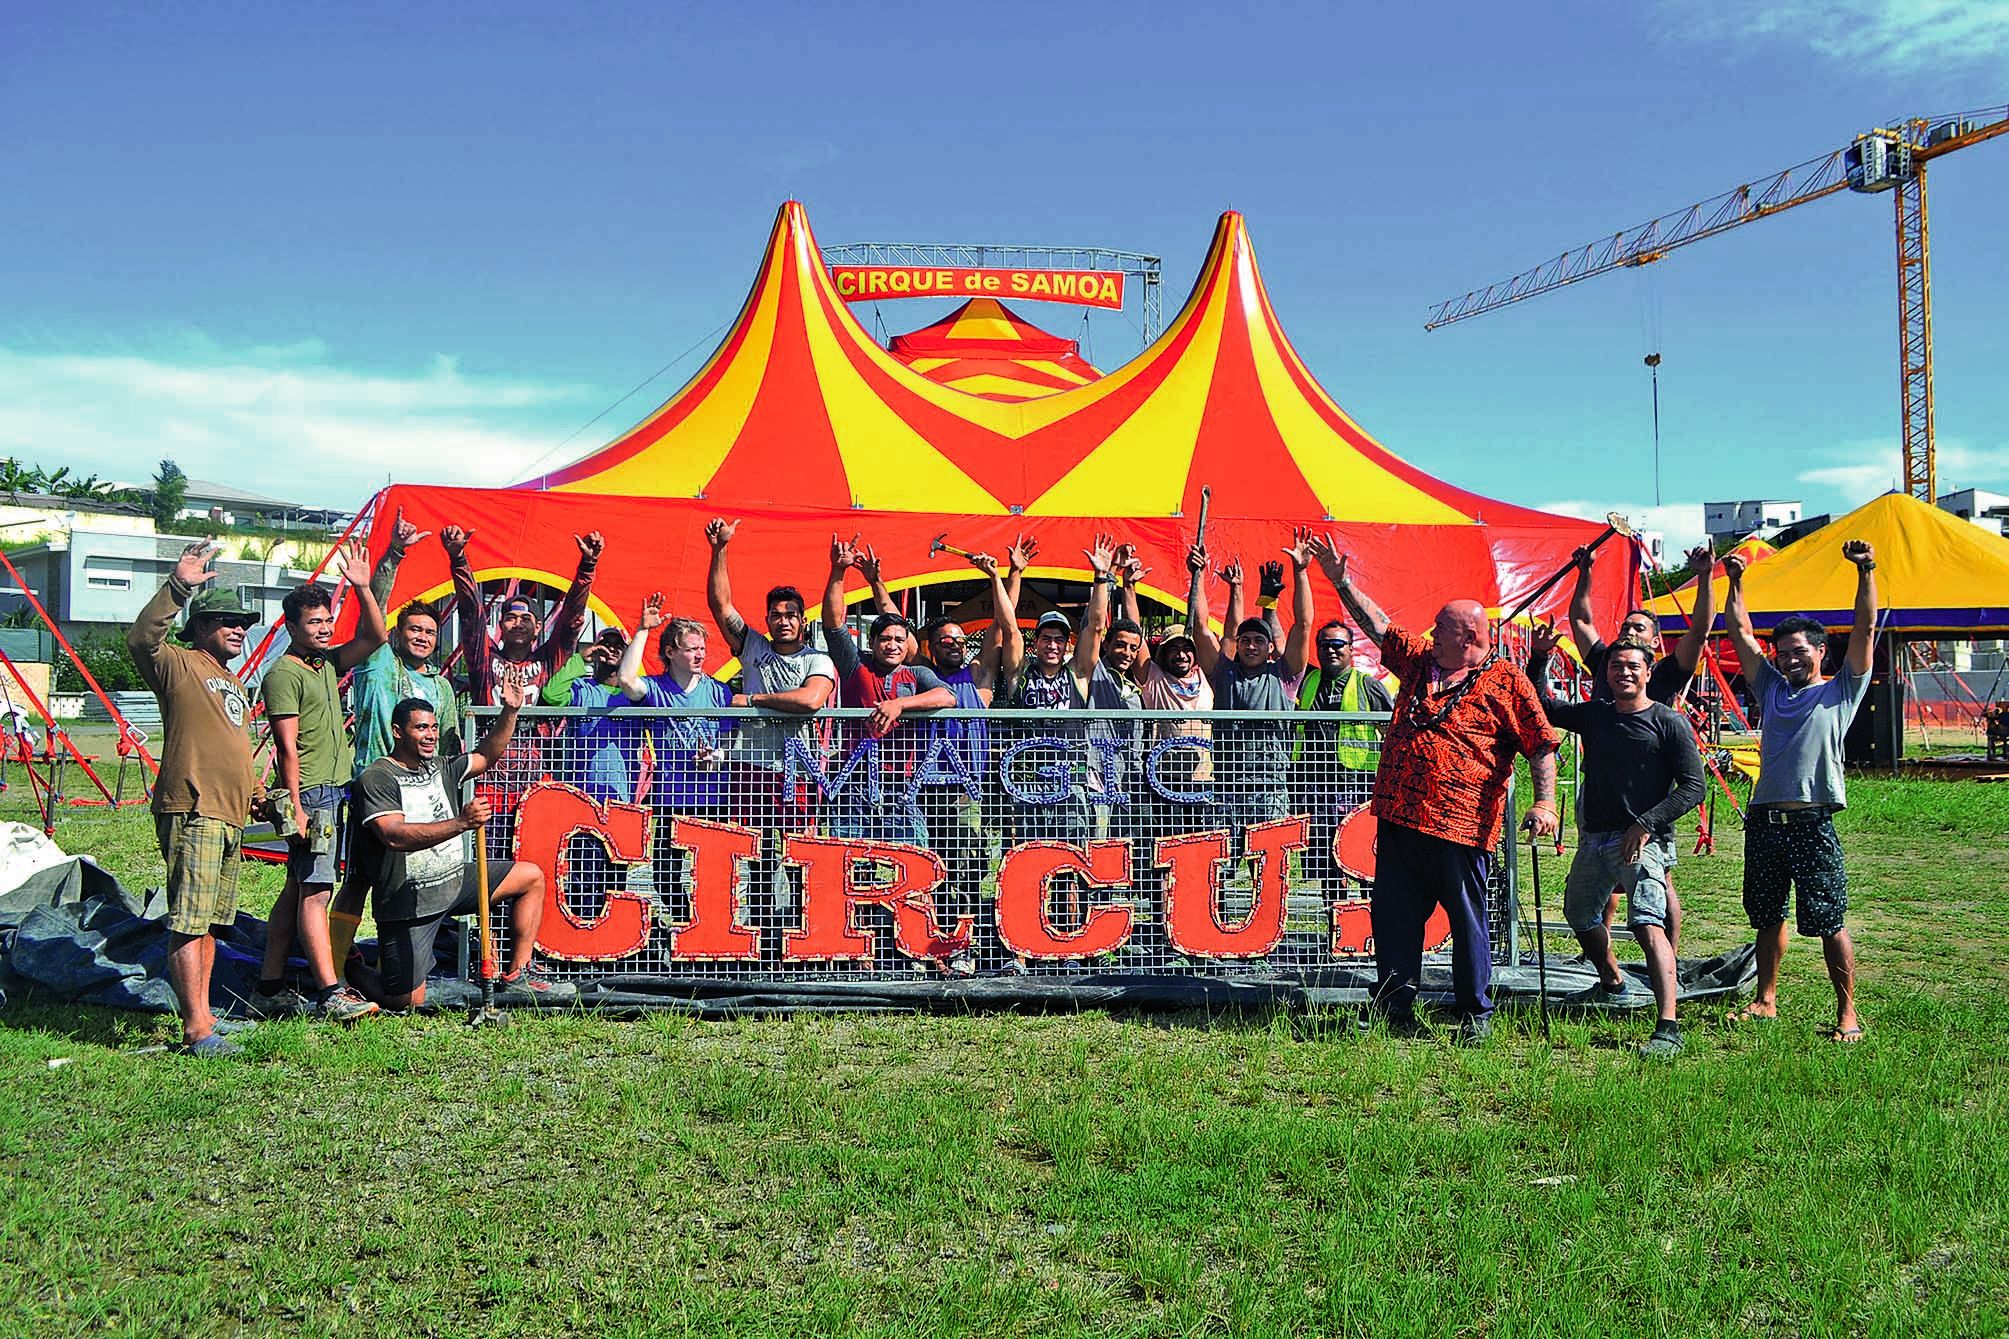 Les 35 artistes du Magic Circus of Samoa étaient à pied d’œuvre hier, à Apogoti. L’objectif est d’aménager le site avant la première représentation jeudi.Photo A.P